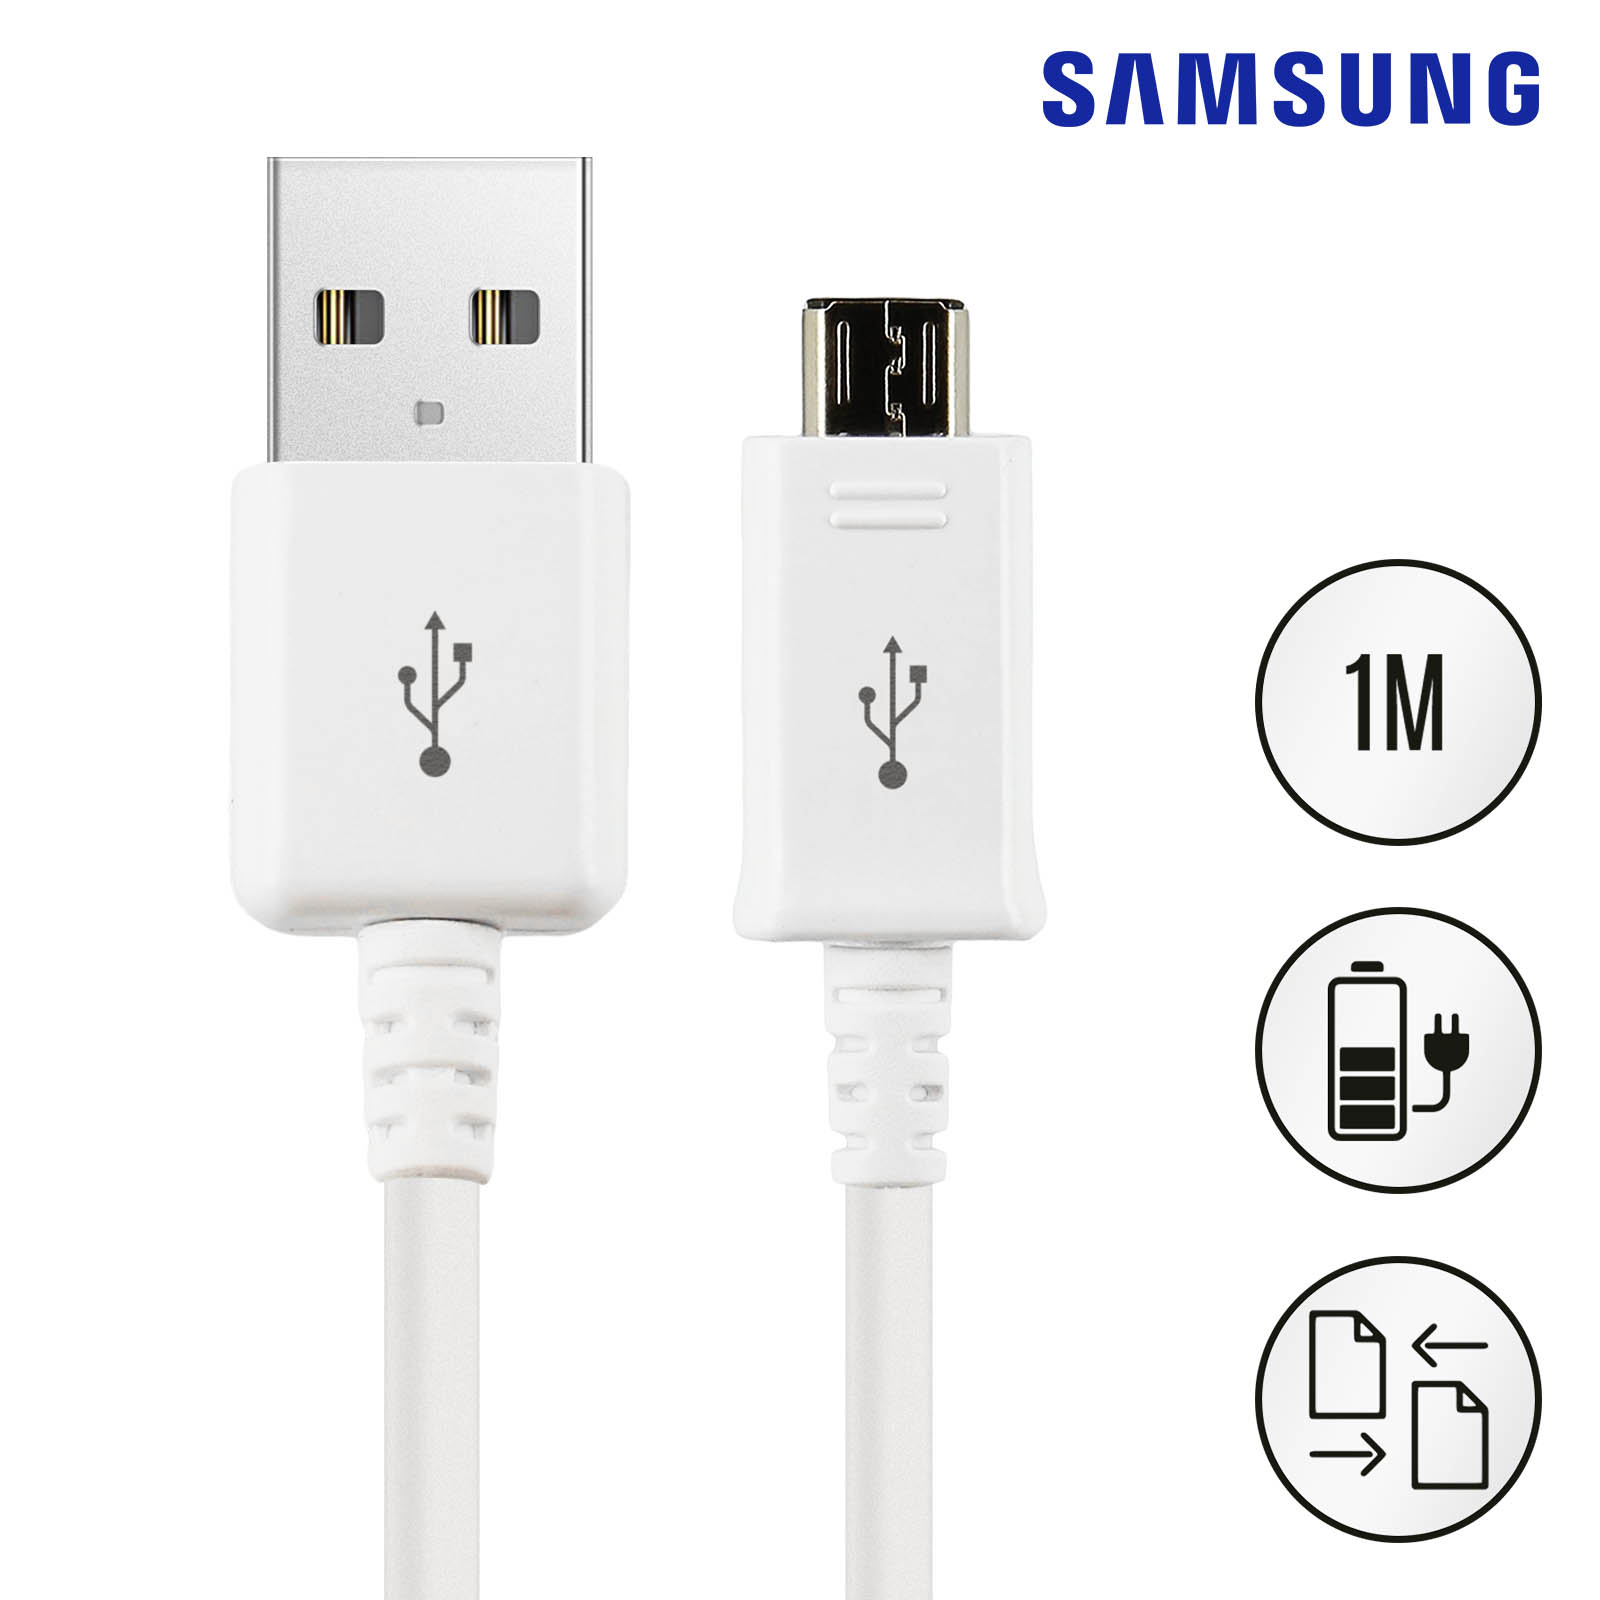 Batterie Chargeur Externe pour SAMSUNG Galaxy S8 Universel Power Bank  2600mAh avec Cable USB/Mirco U - Couleur:NOIR